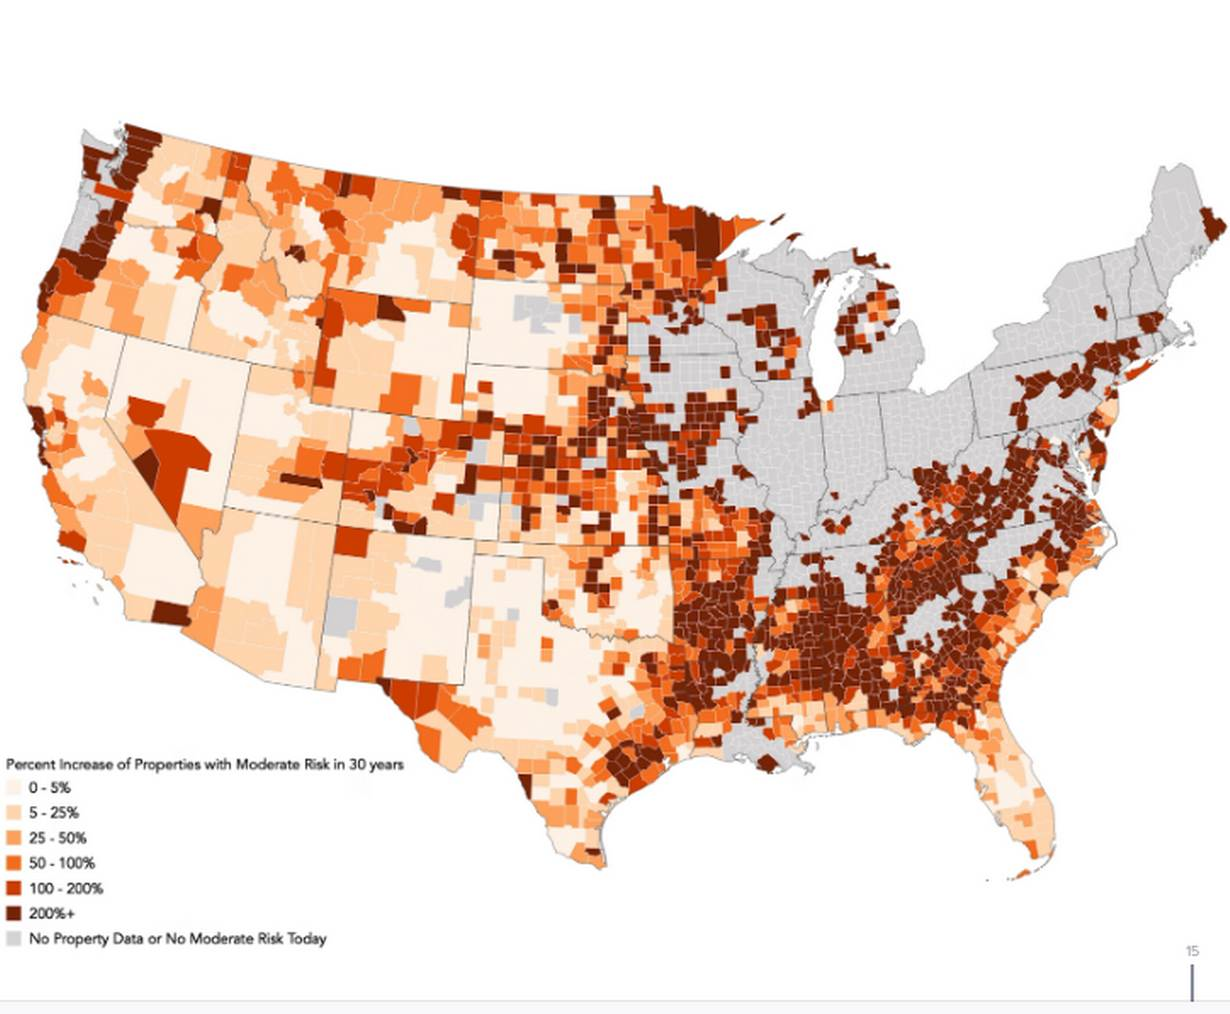 美国地图显示了30年来中等野火风险的财产增长百分比。